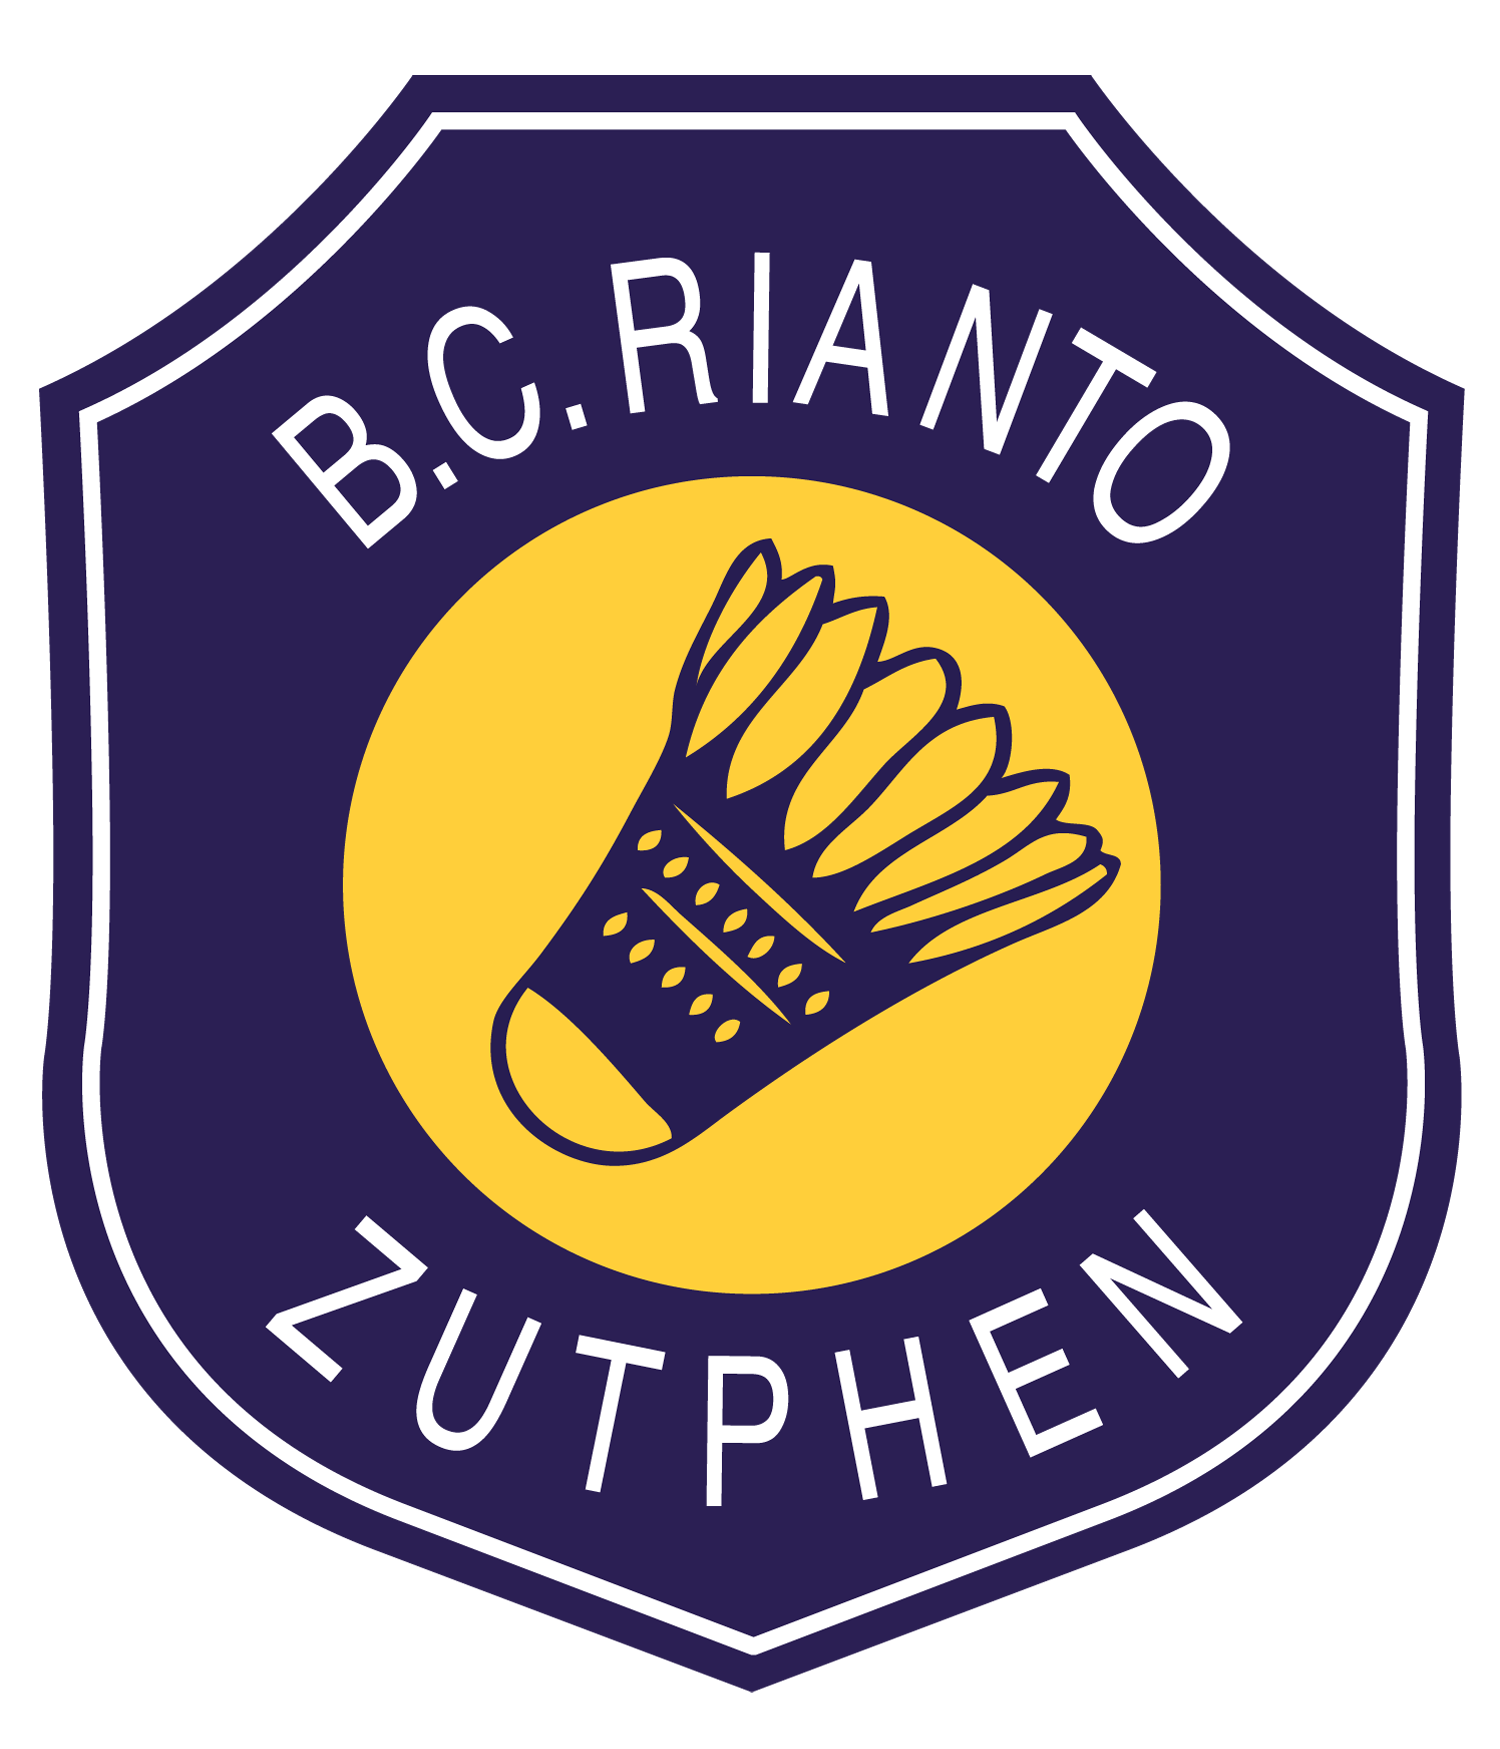 B.C. Rianto Zutphen